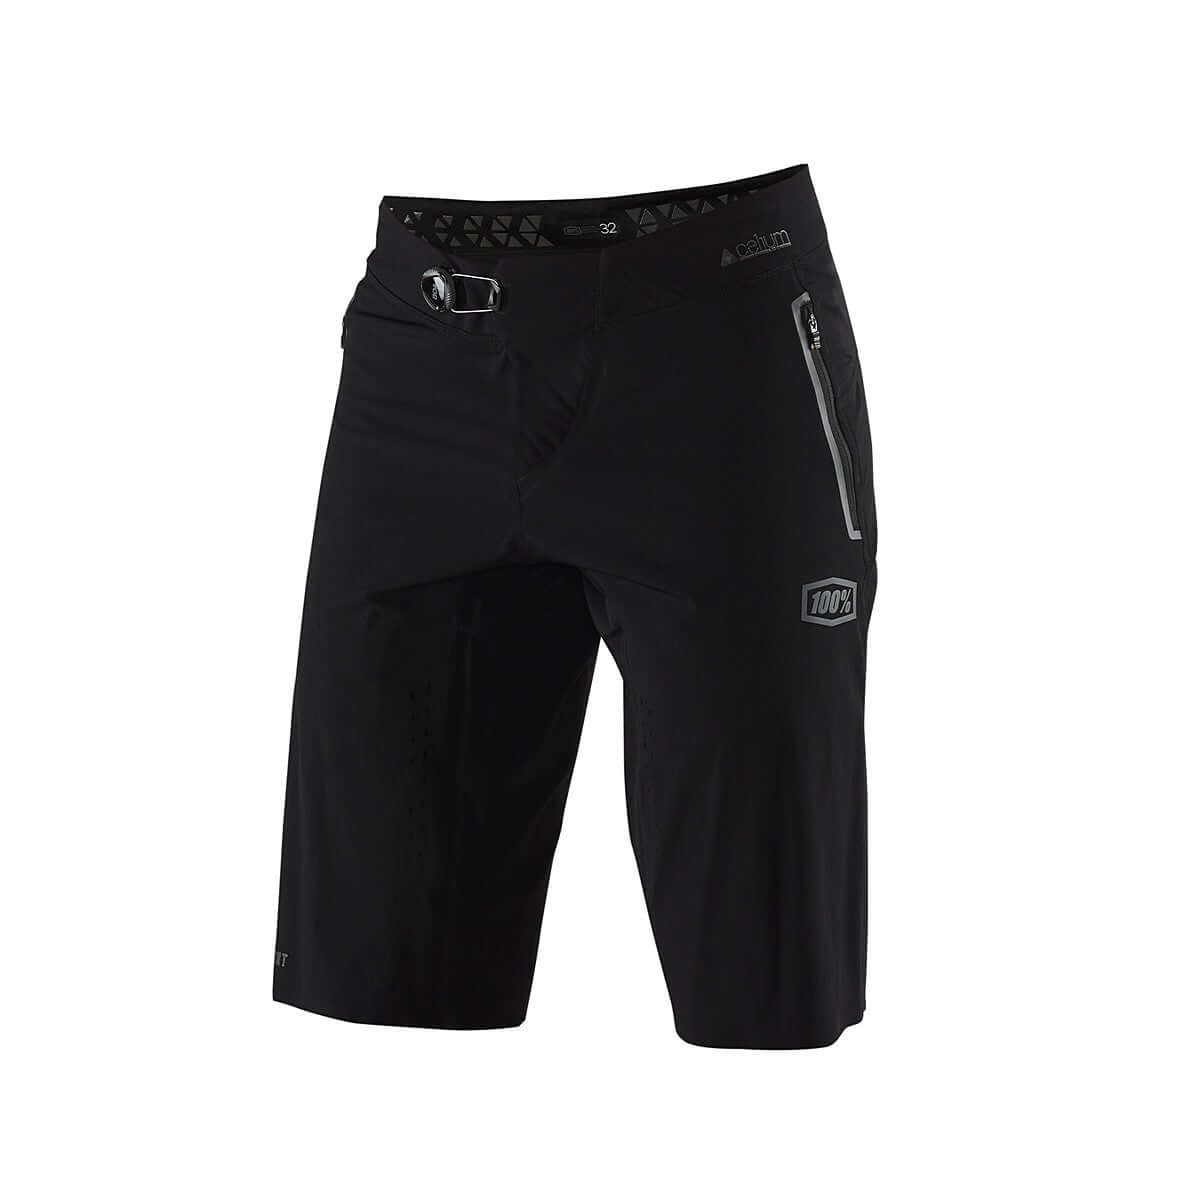 100% Celium Shorts Black 34 Bike Shorts